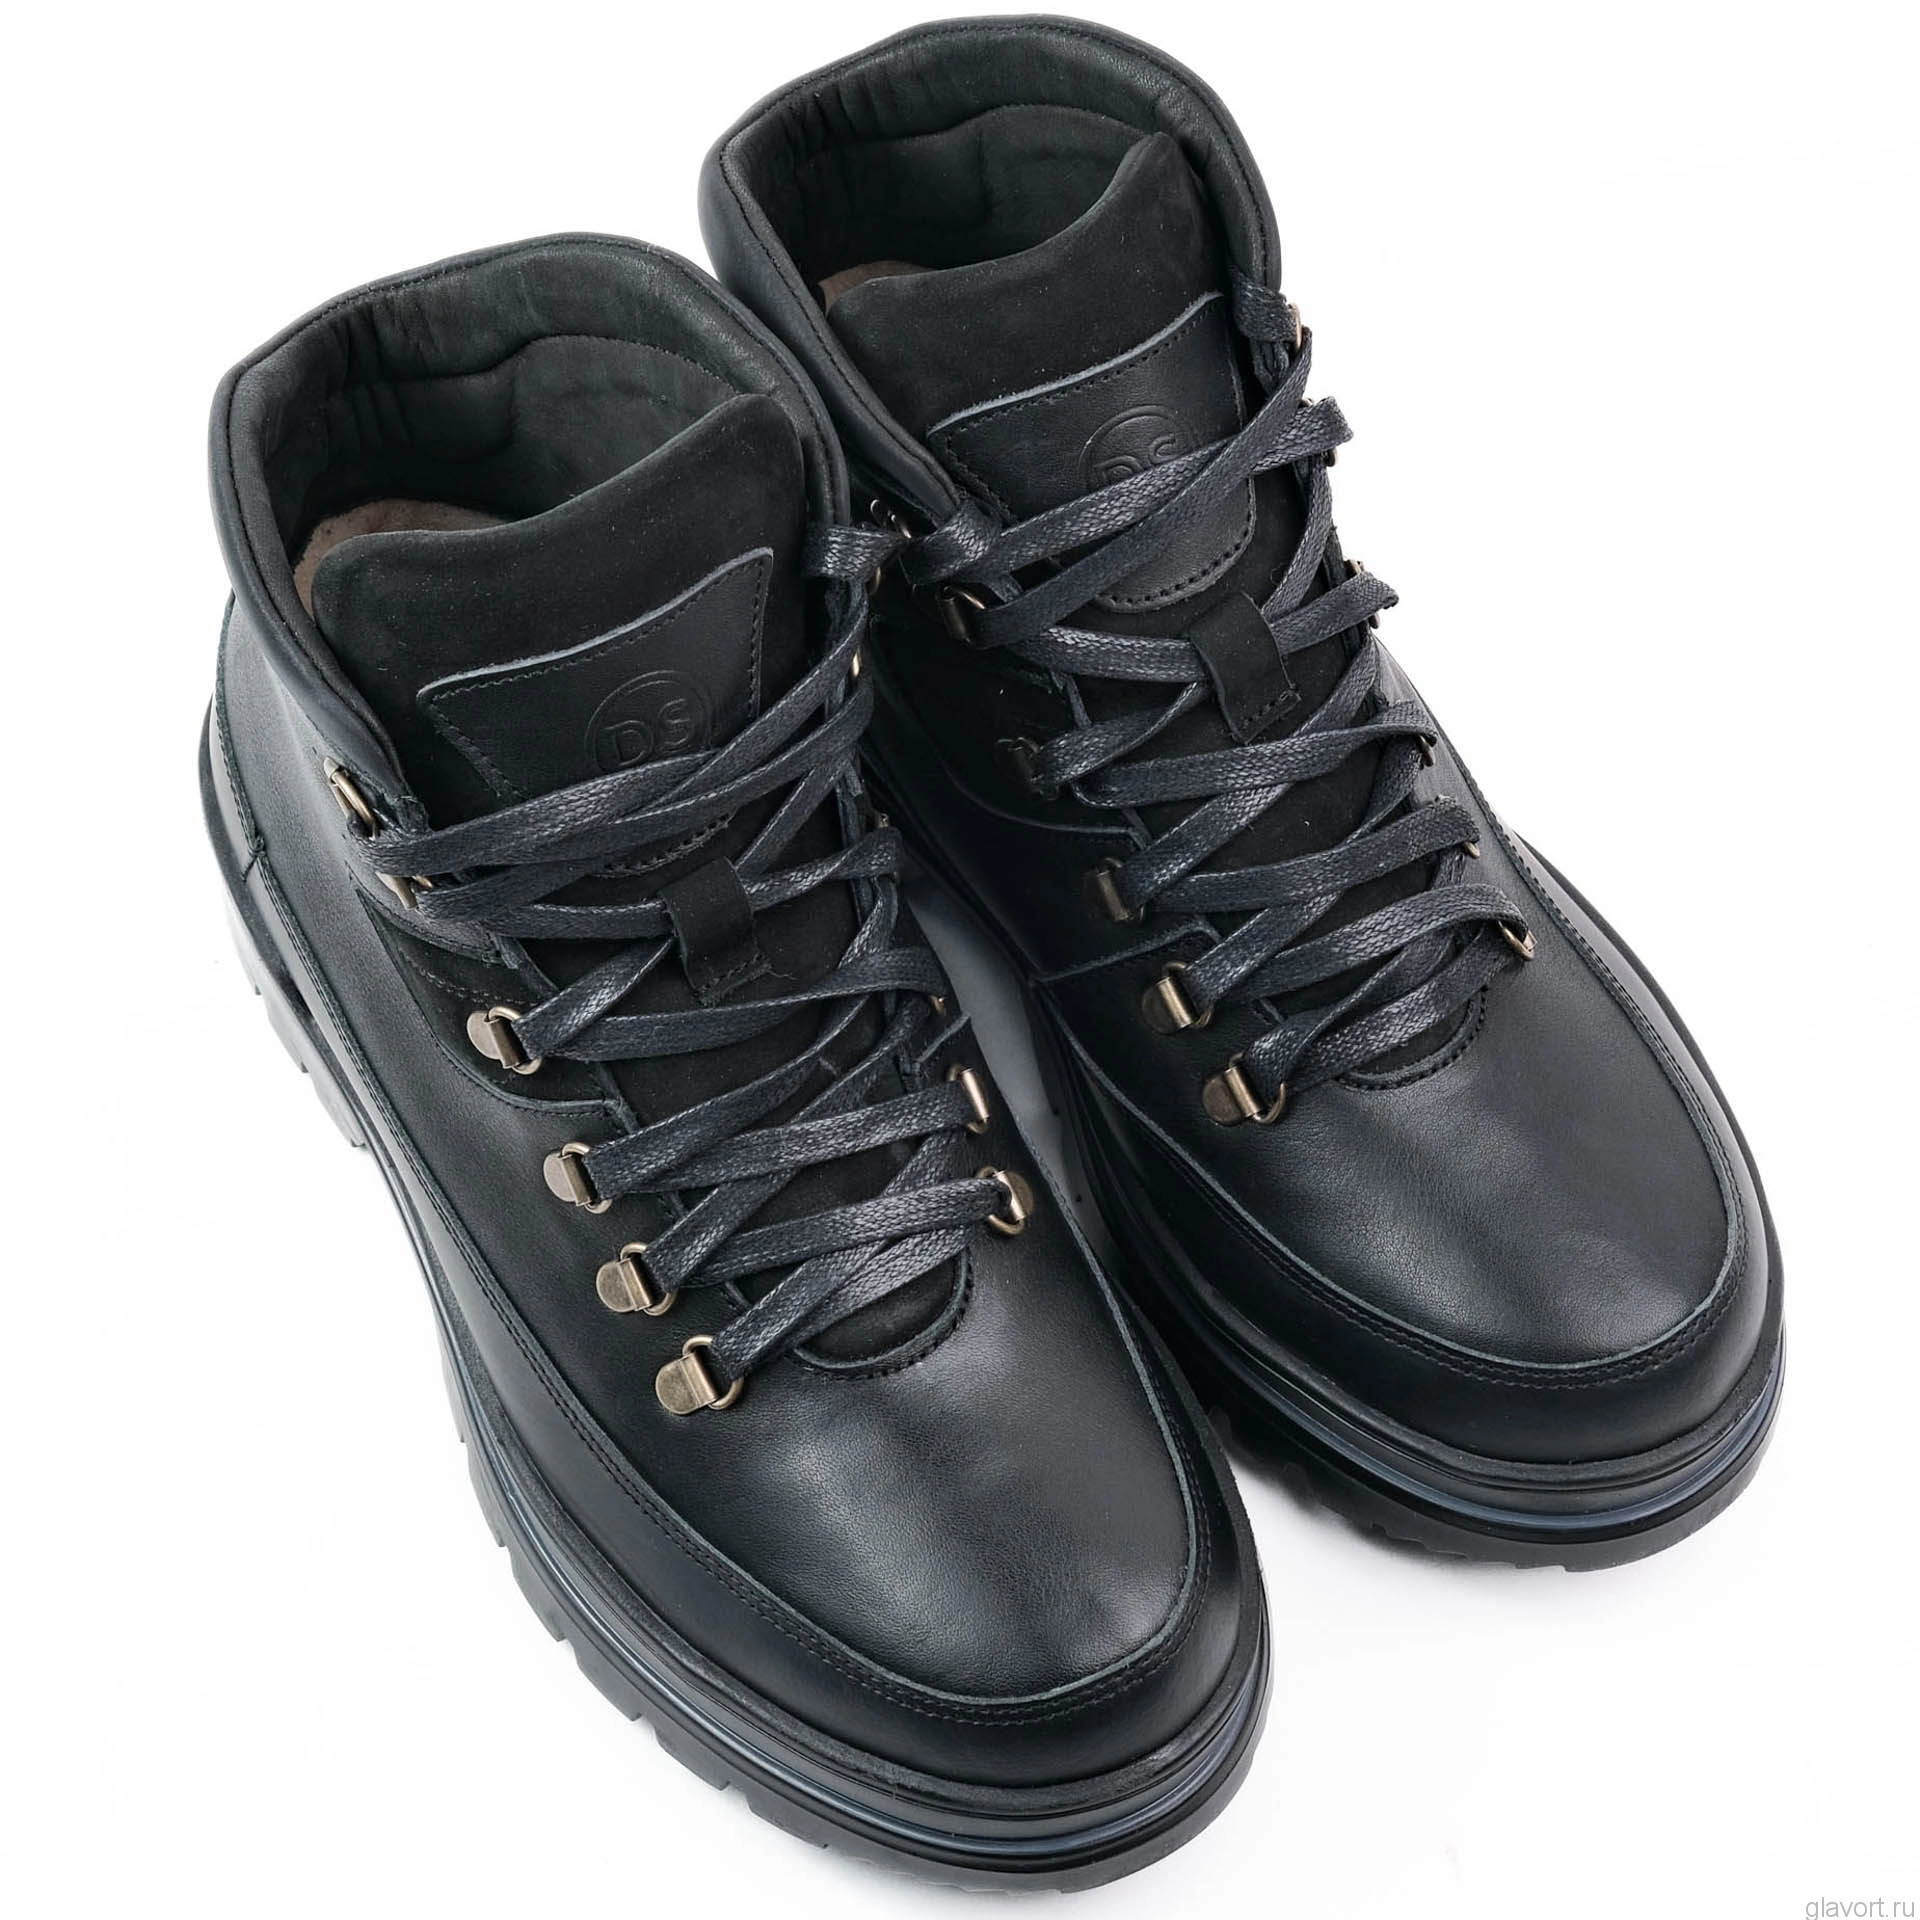 Dr.Spektor ботинки мужские зимние с шипами, Ш1427-К, Черный Ш1427-К-41,купить Dr.Spektor ботинки мужские зимние с шипами, Ш1427-К, Черный